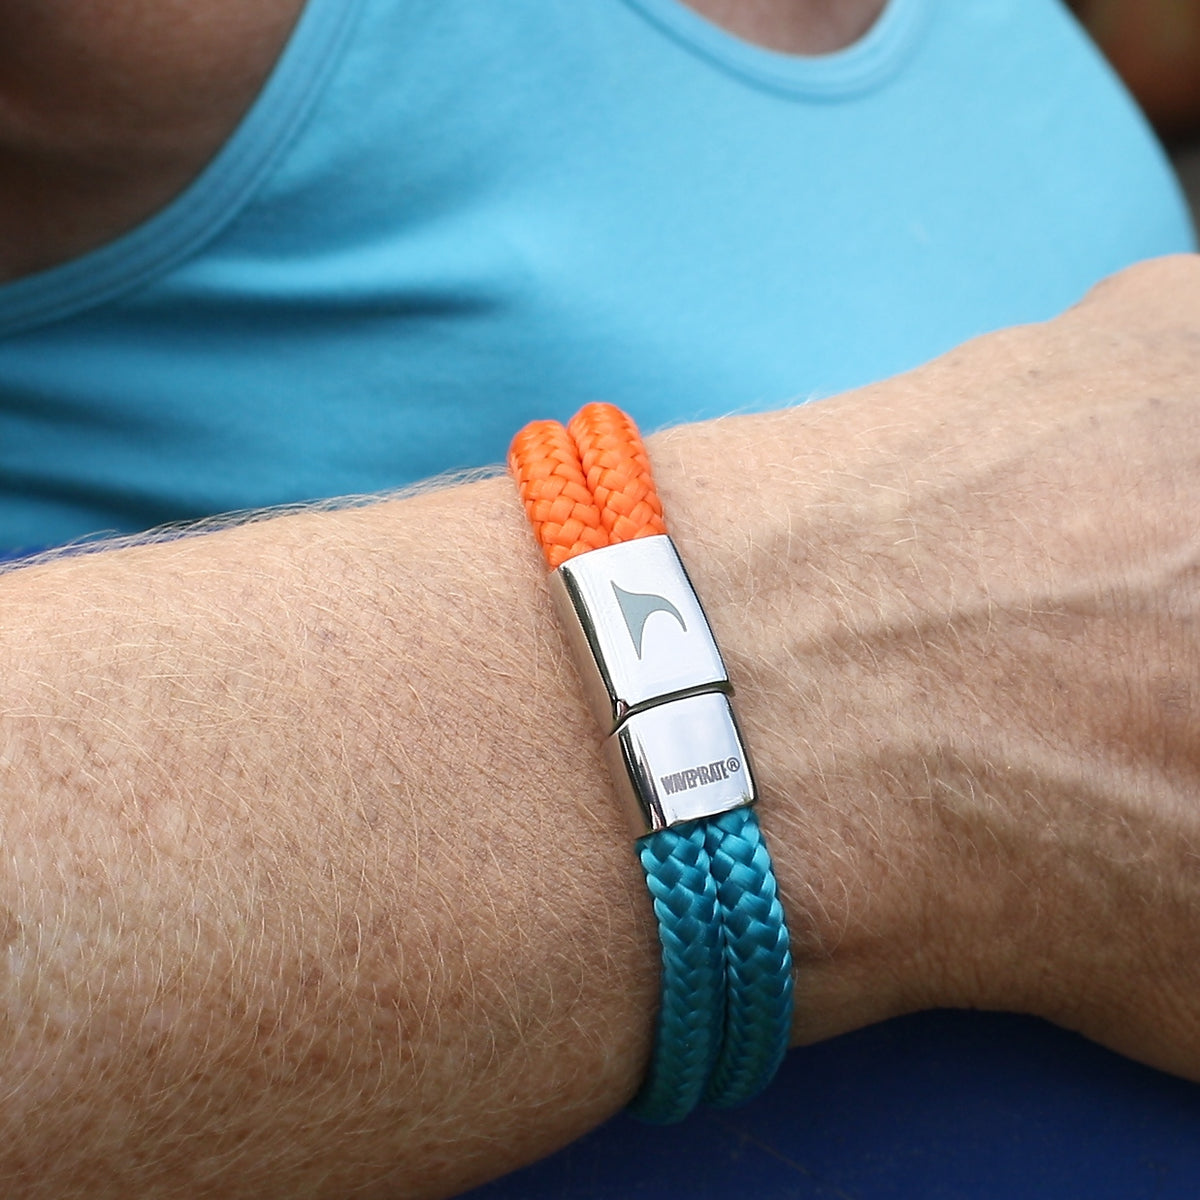 Damen-Segeltau-armband-pure-blau-orange-silber-geflochten-Edelstahlverschluss-getragen-wavepirate-shop-st1